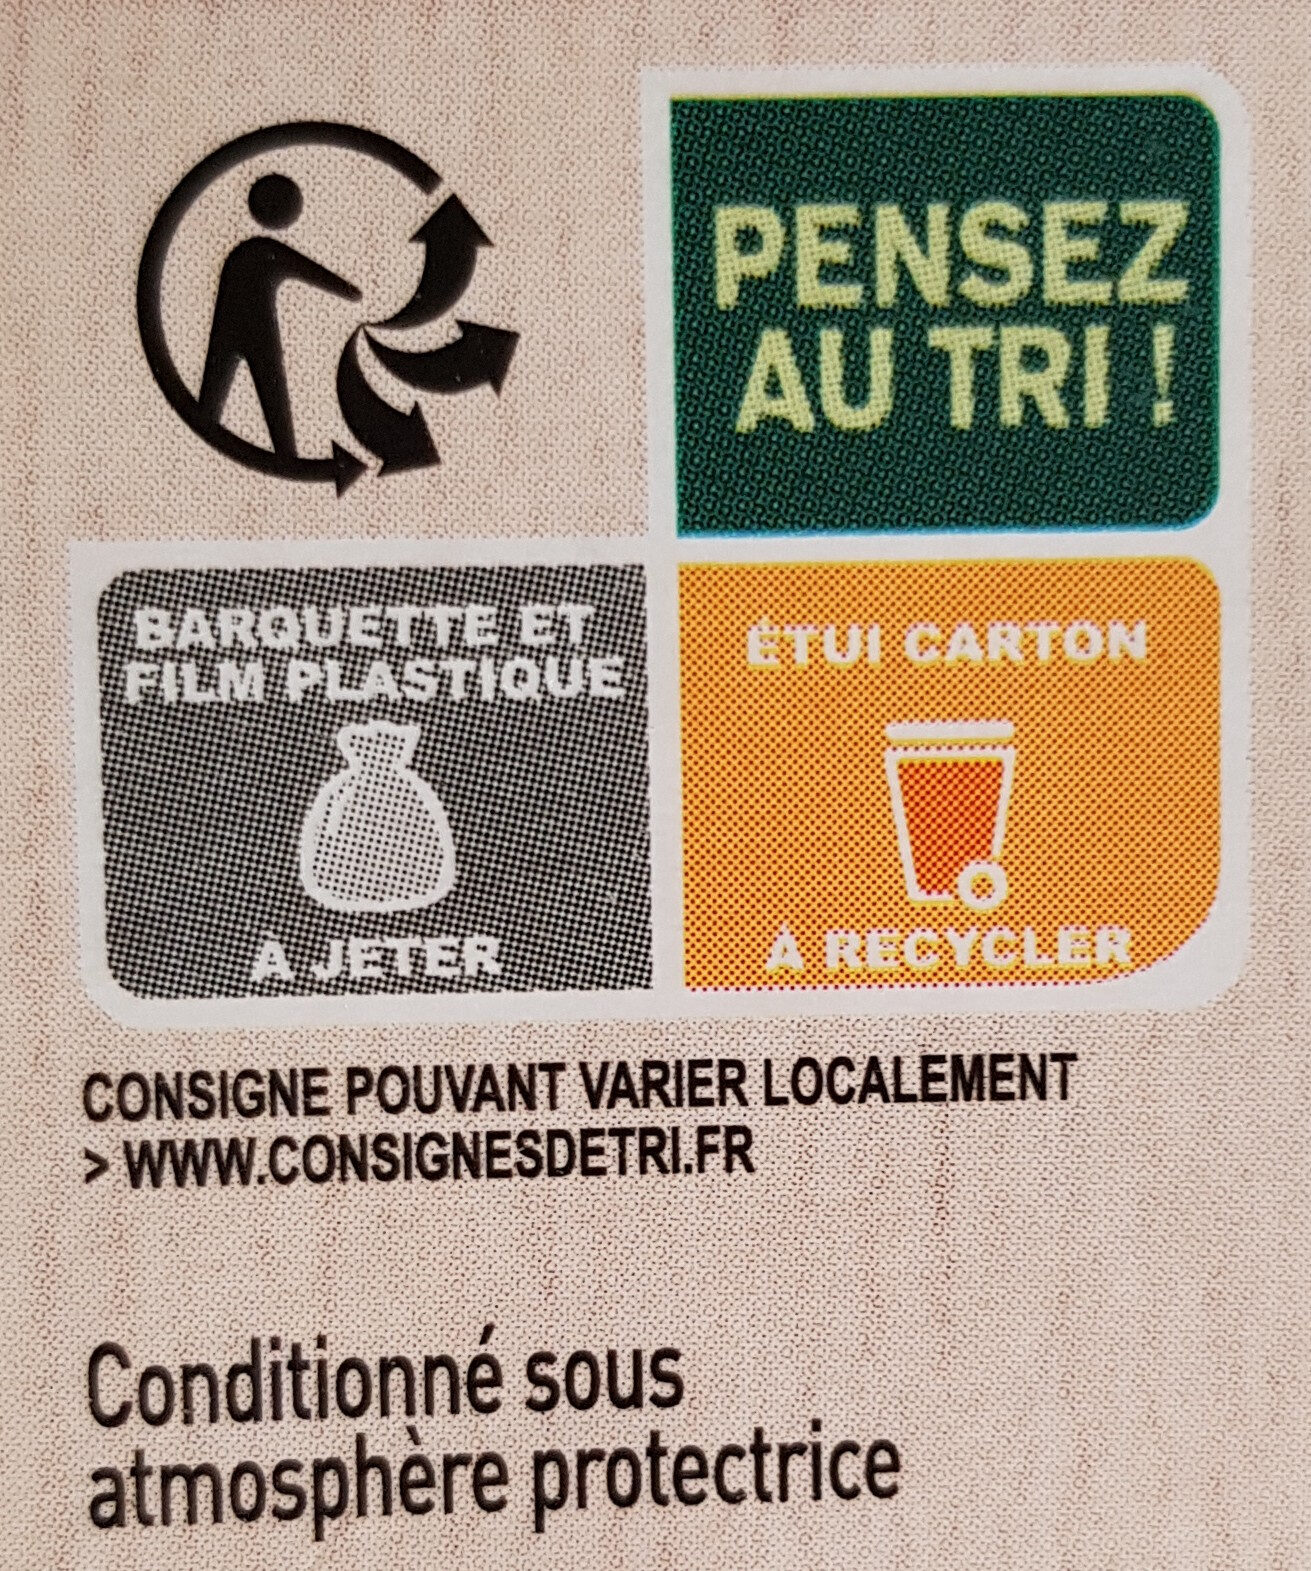 Filet de Saumon Purée de Brocolis - Instrucciones de reciclaje y/o información de embalaje - fr